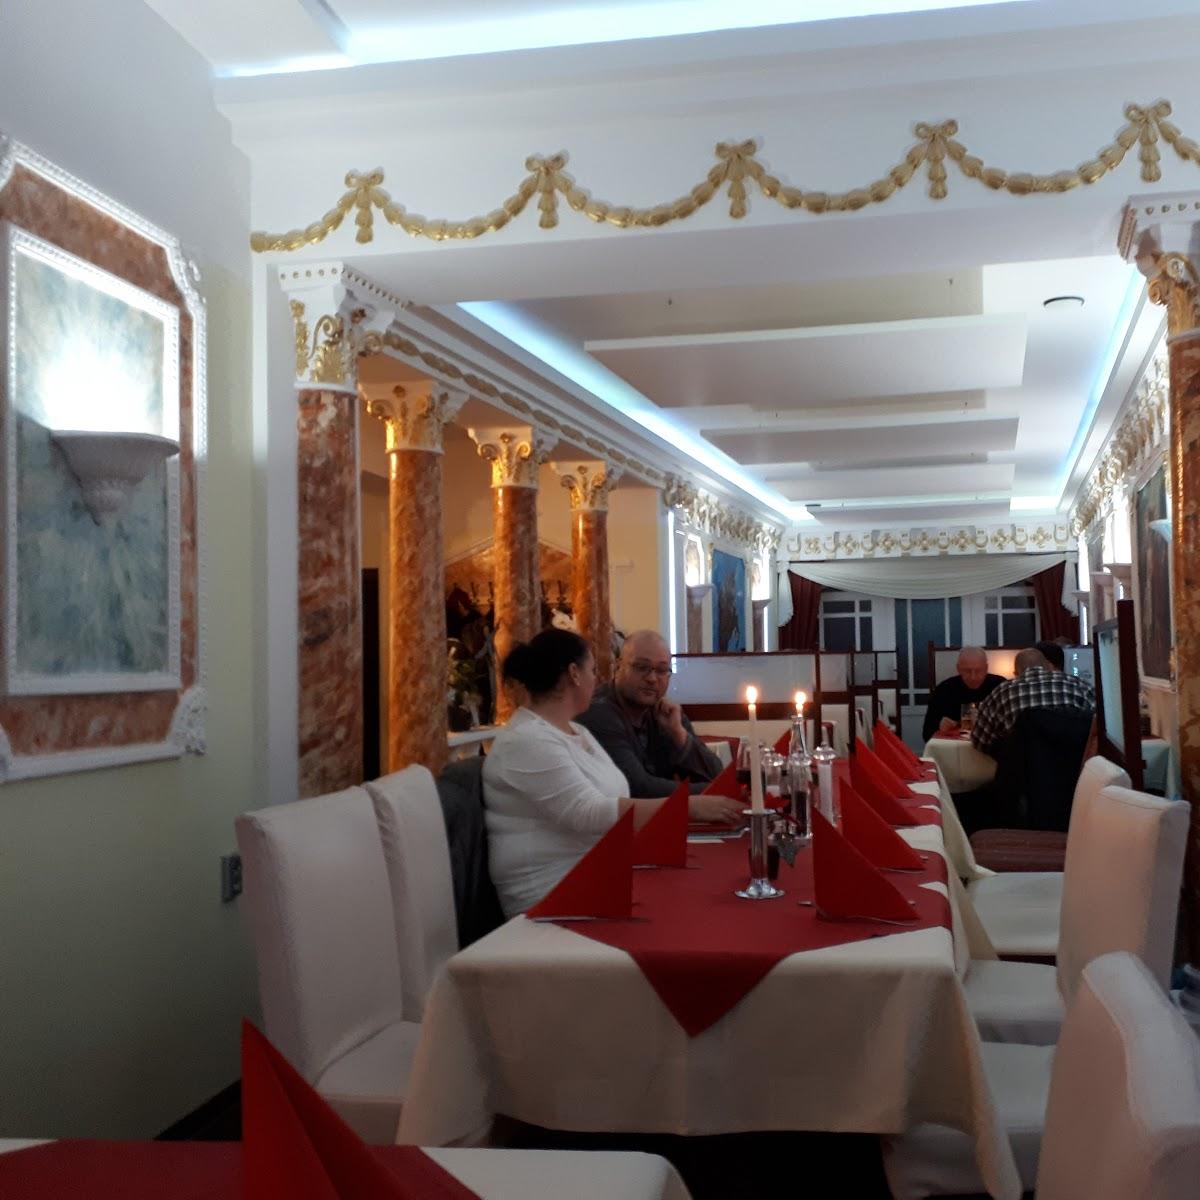 Restaurant "Restaurant Pallas Athene" in Seesen